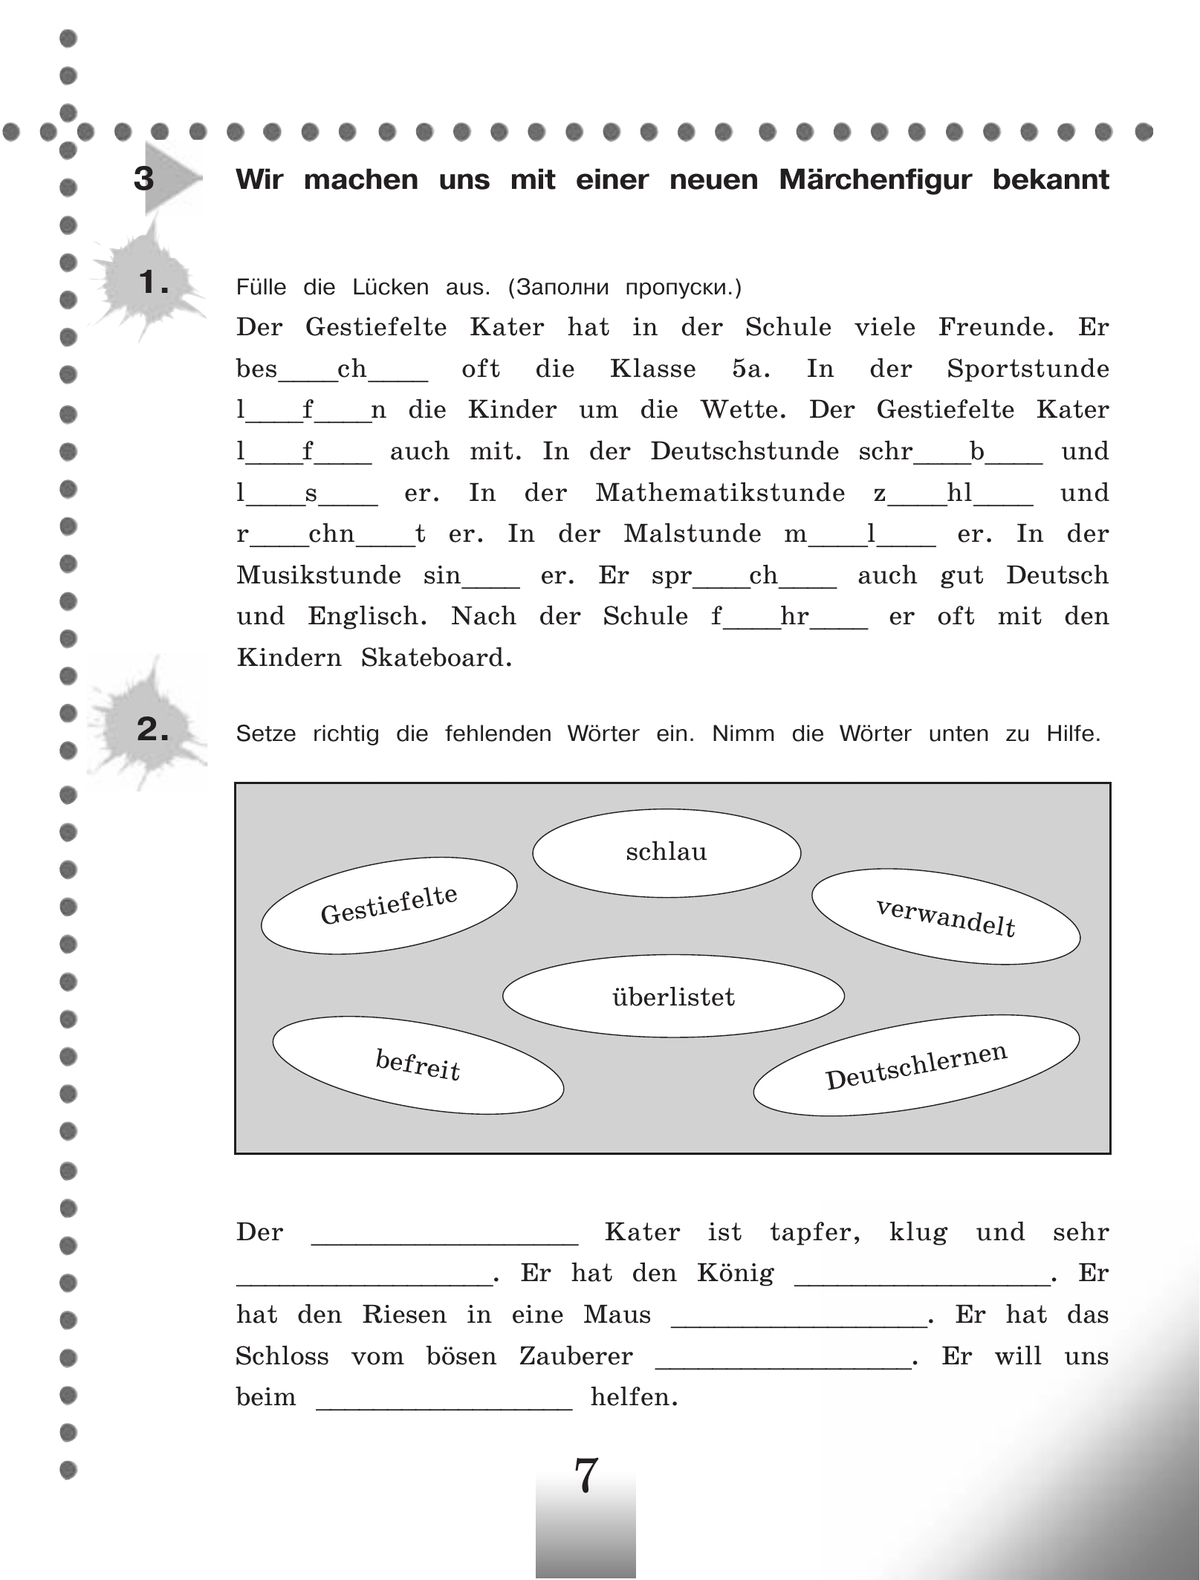 Немецкий язык. Рабочая тетрадь. 5 класс 7